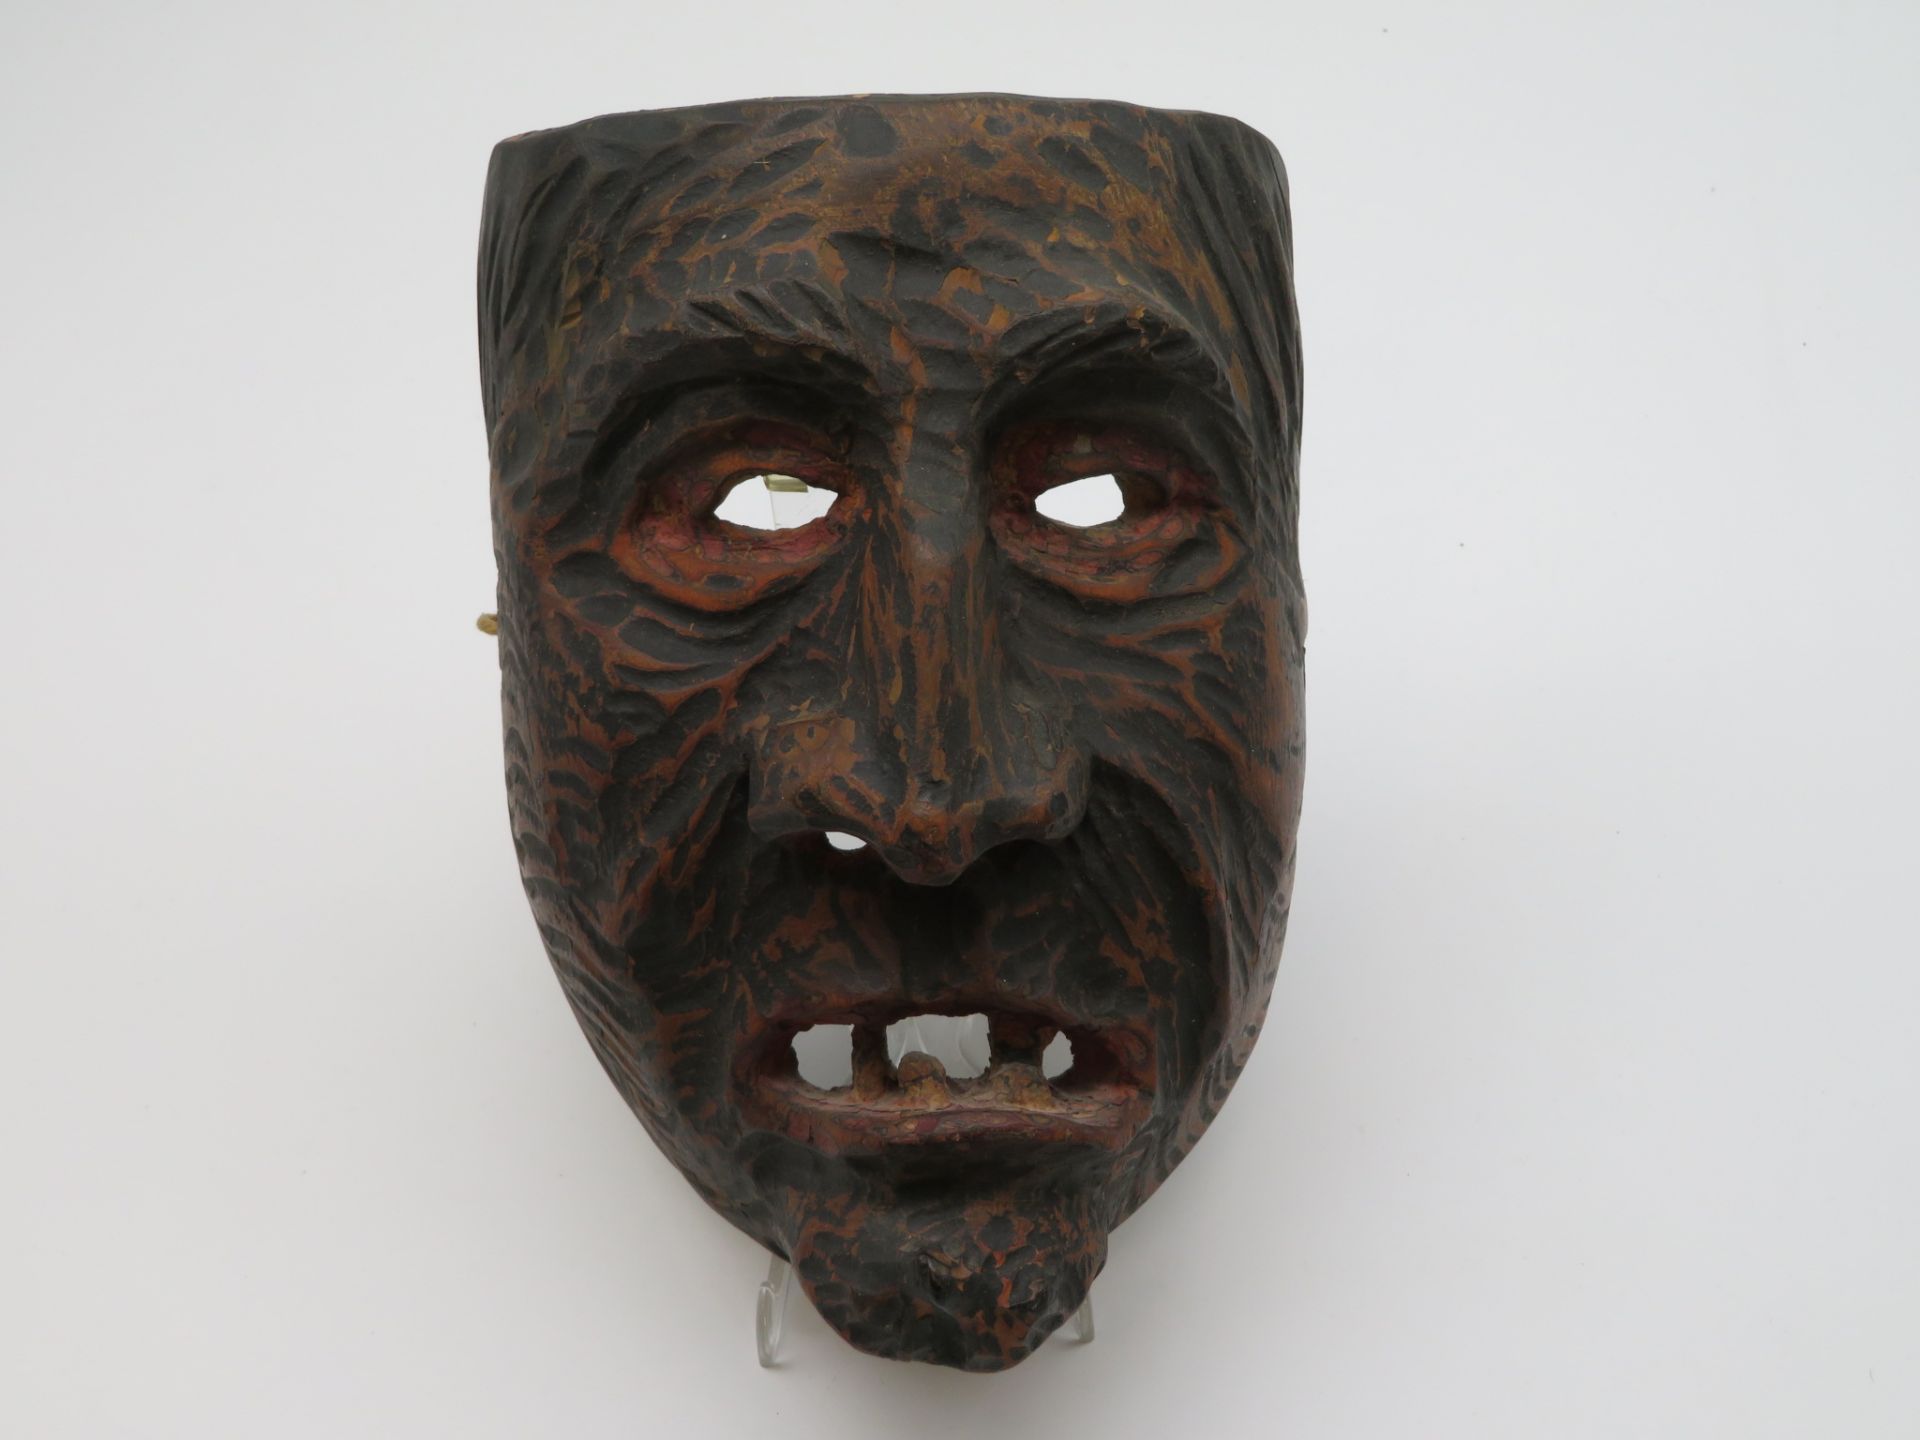 Antike Perchtenmaske, Holz geschnitzt und gefasst, 22 x 16 x 12 cm.